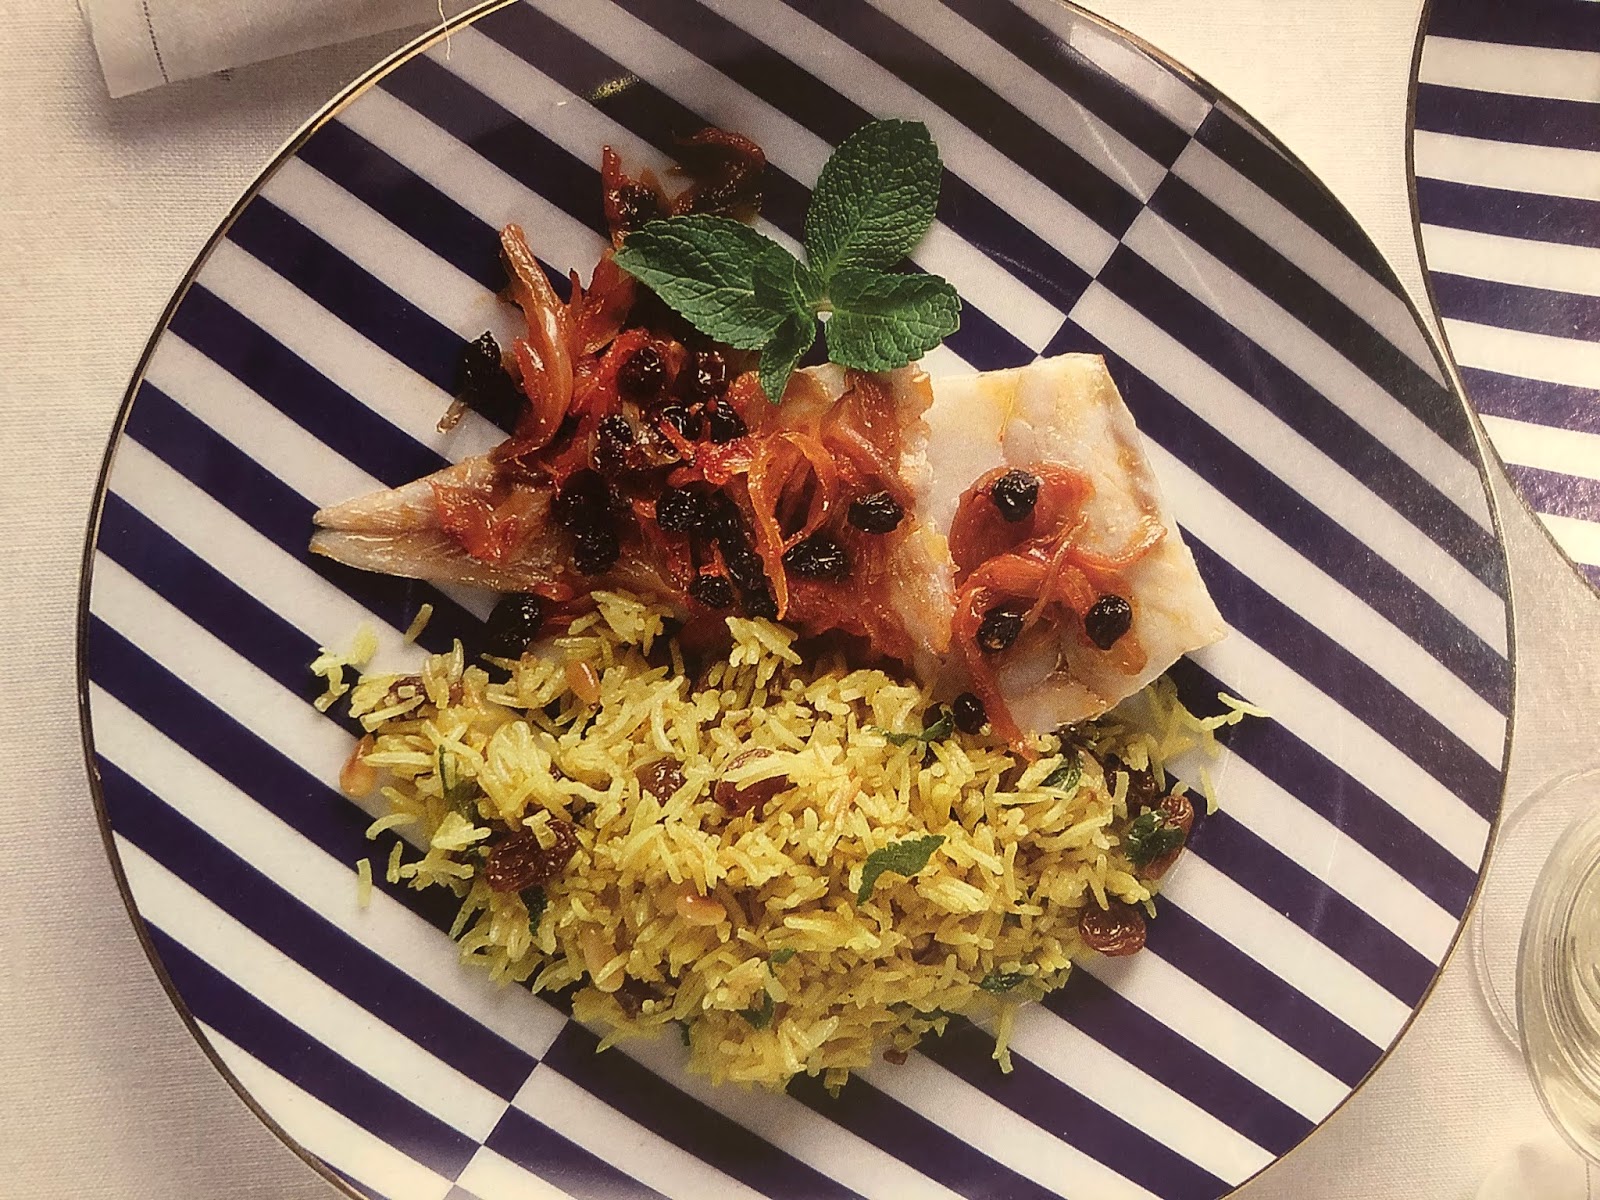 Υγιεινές συνταγές από τον σεφ Παναγιώτη Μουτσόπουλο: Μπακαλιάρος με καραμελωμένα κρεμμύδια και σταφίδες στο φούρνο με ρύζι μπασμάτι, με κουρκουμά, κουκουνάρι και δυόσμο - Φωτογραφία 1